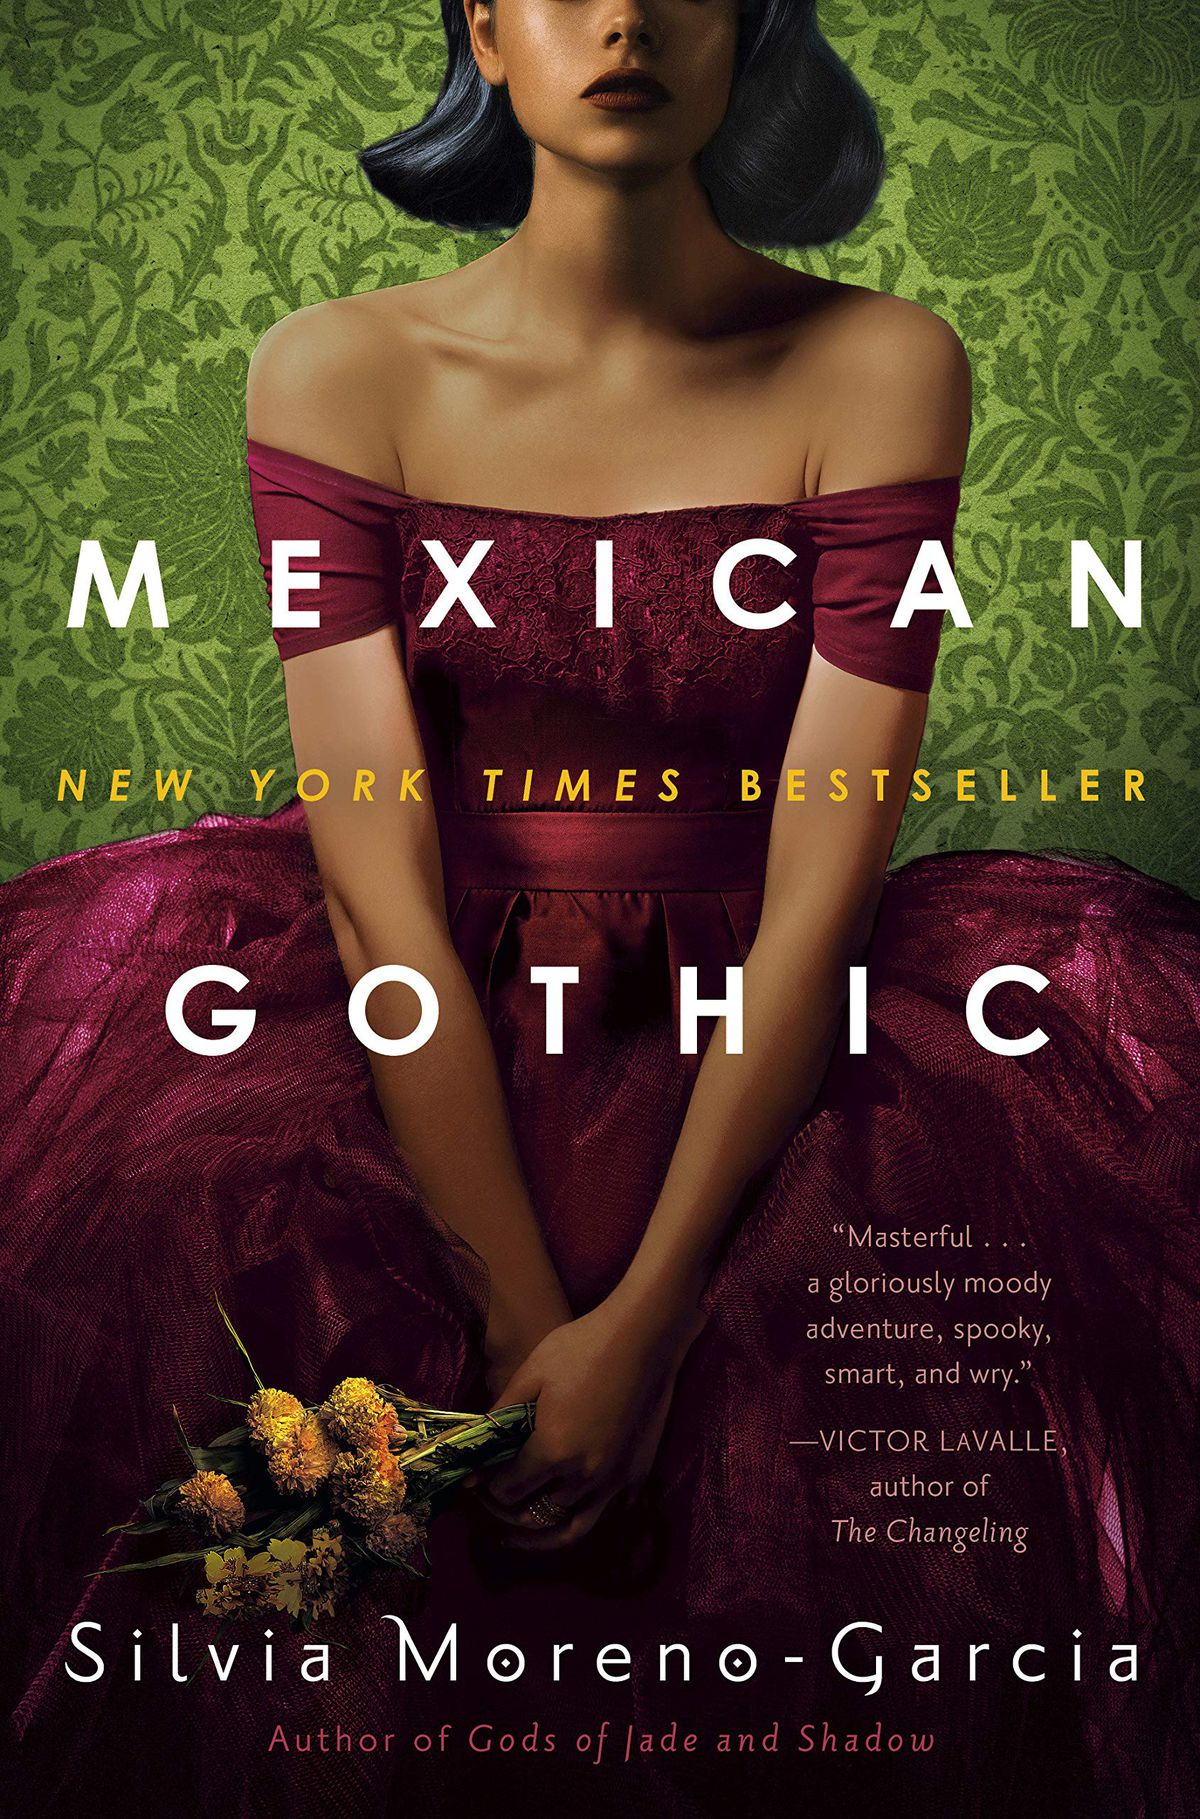 Copertina del gotico messicano di Silvia Moreno-Garcia